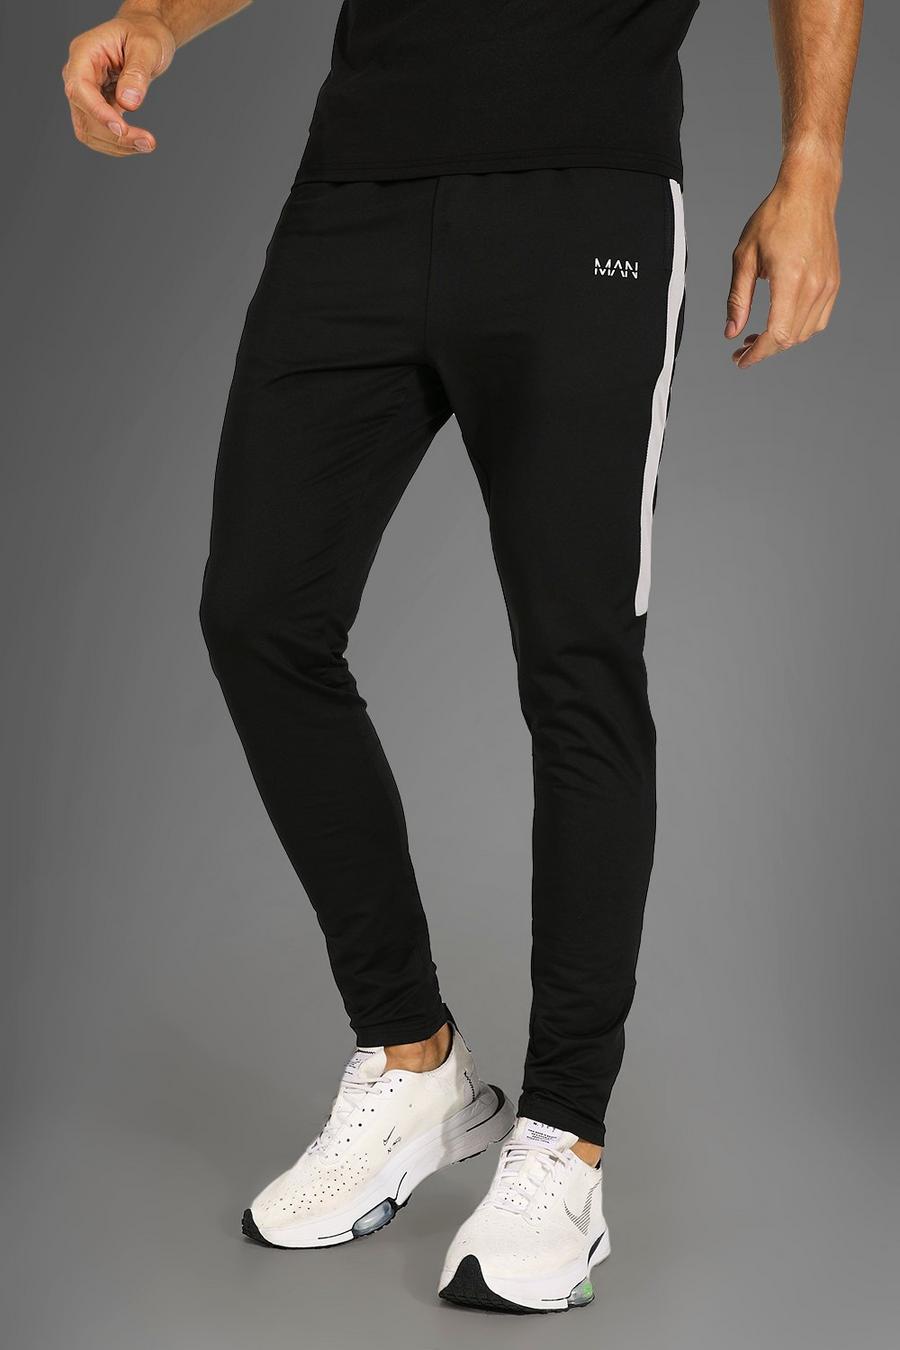 שחור מכנסי טרנינג ספורטיביים לאימונים עם דוגמה מסדרת Man, לגברים גבוהים image number 1